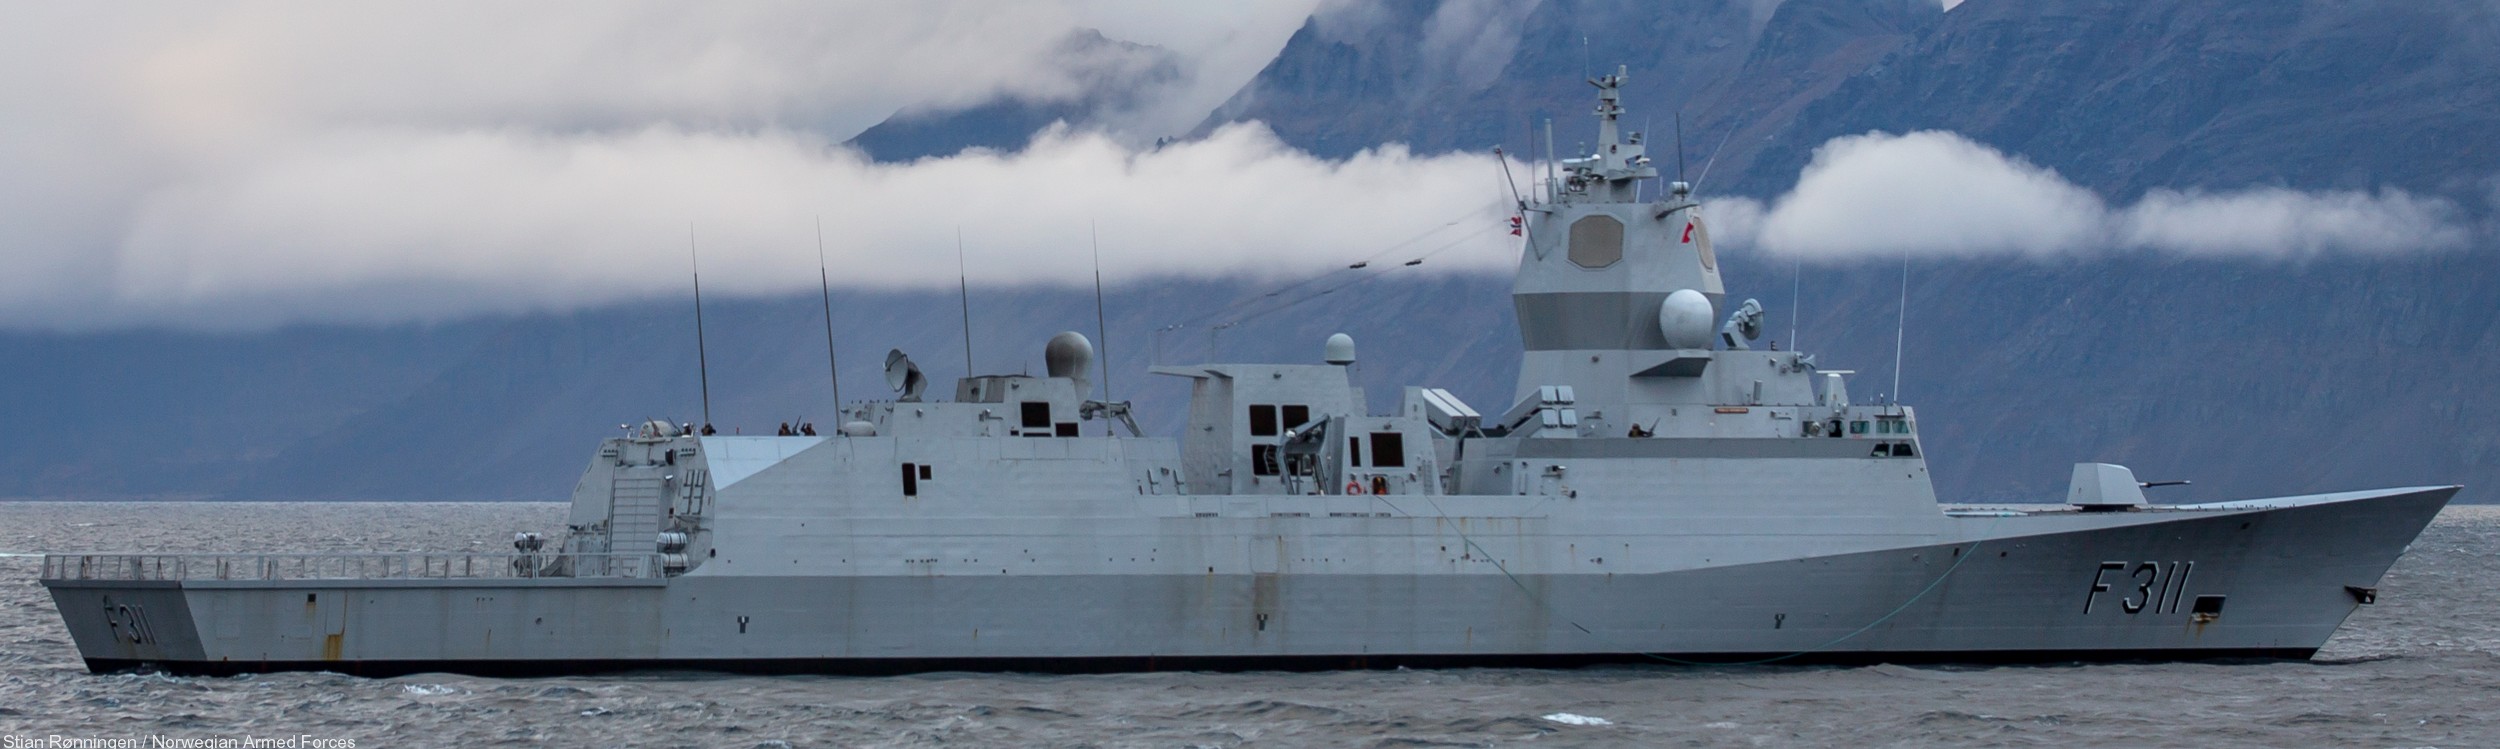 f-311 hnoms roald amundsen knm nansen class frigate royal norwegian navy sjoforsvaret 60